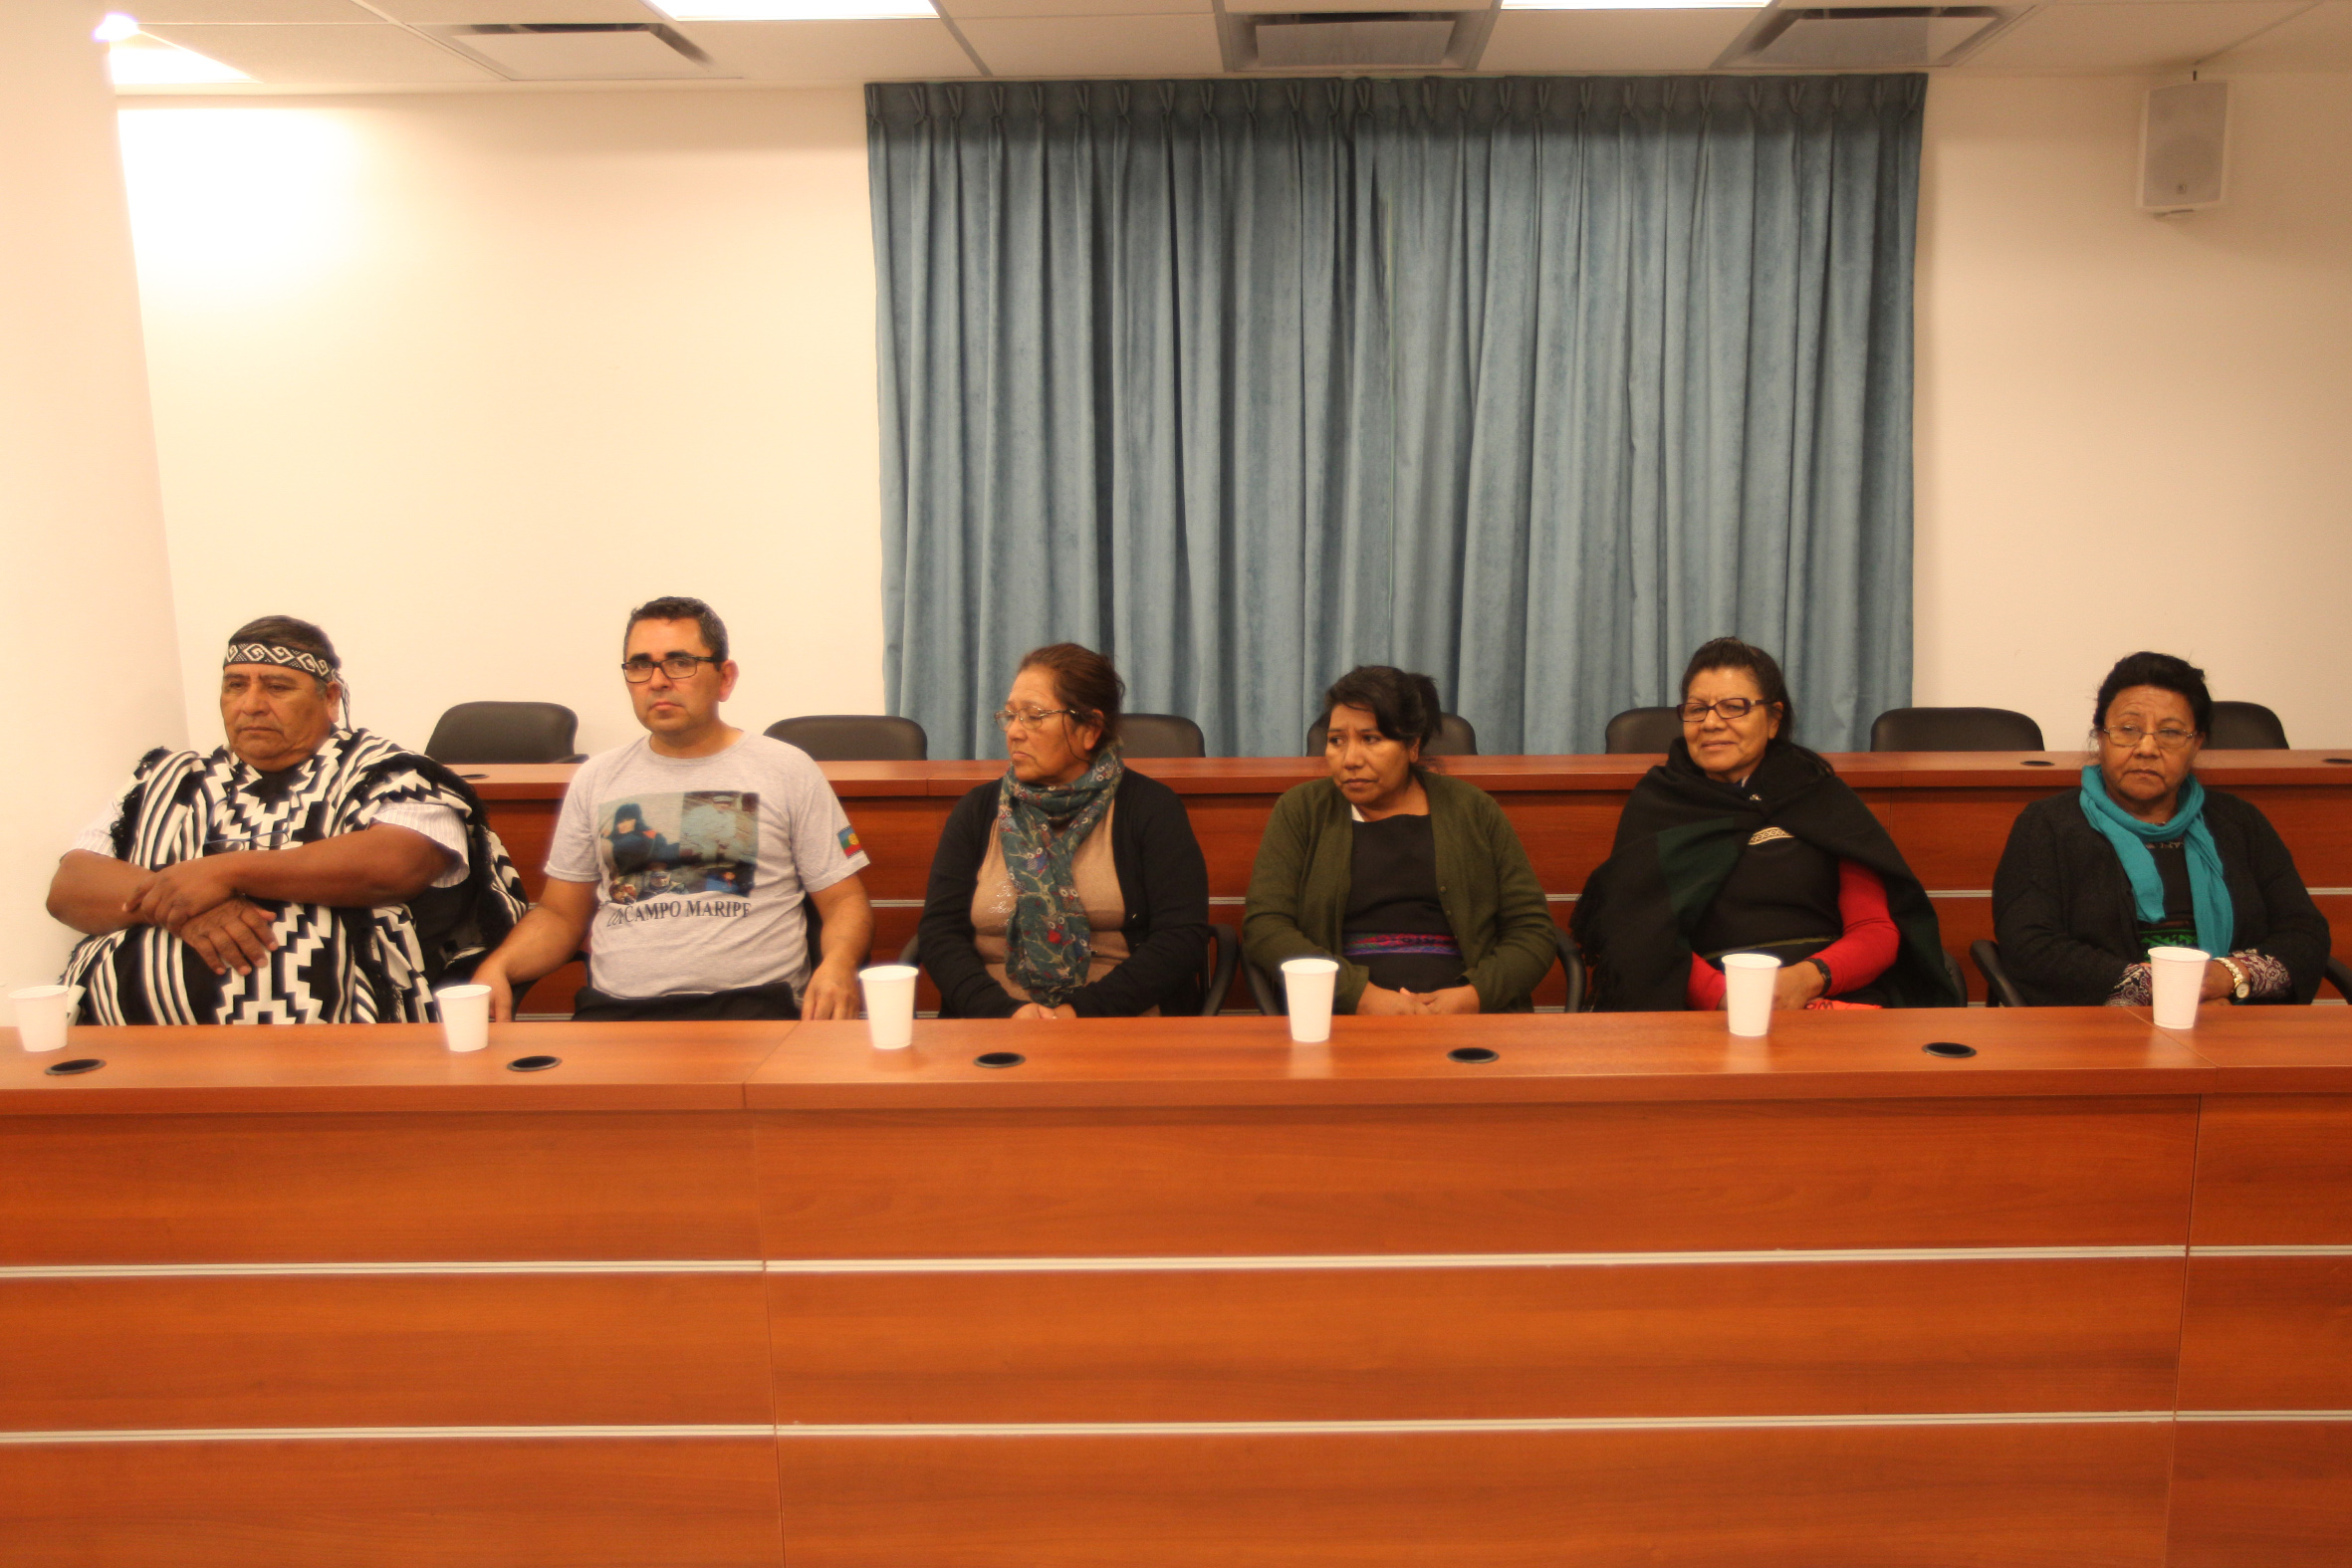 Los acusados durante el juicio en el que fueron absueltos. Foto archivo